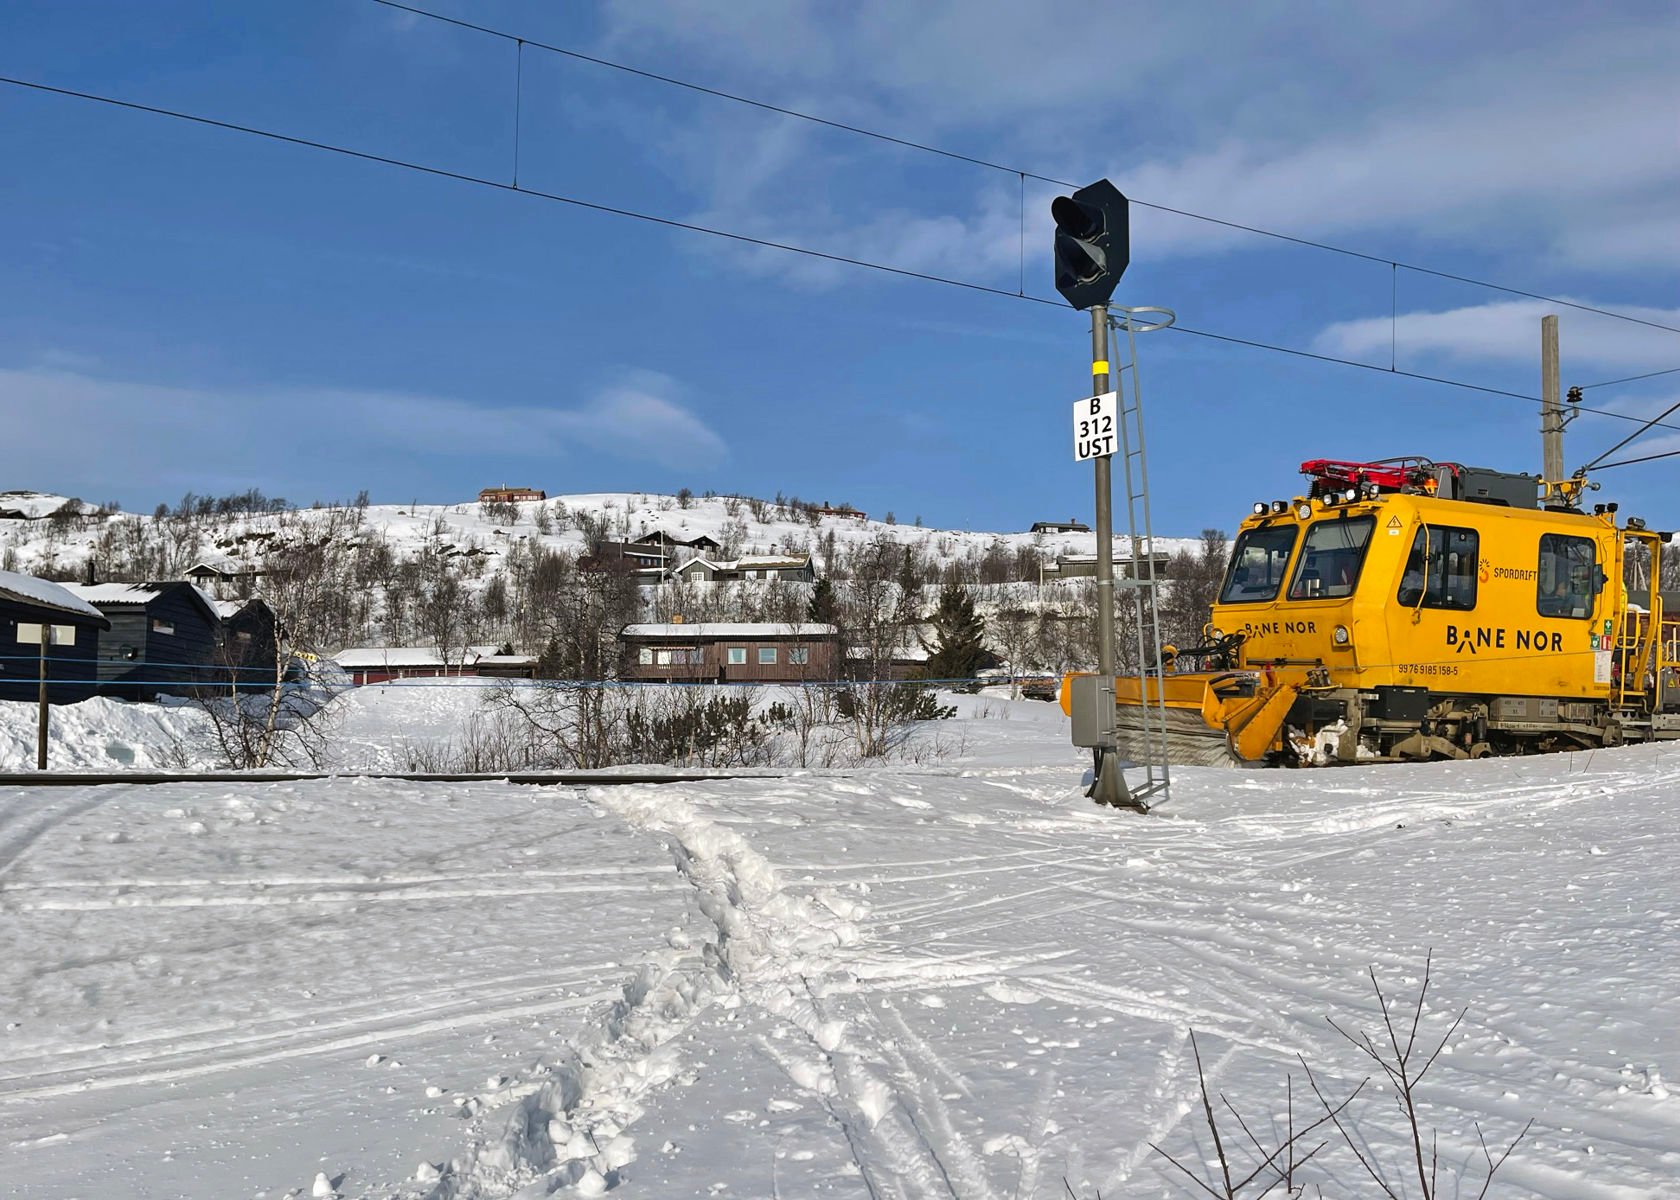 Spor i snøen krysser jernbaneskinnene. En gul arbeidsmaskin fra Bane NOR står på sporet.